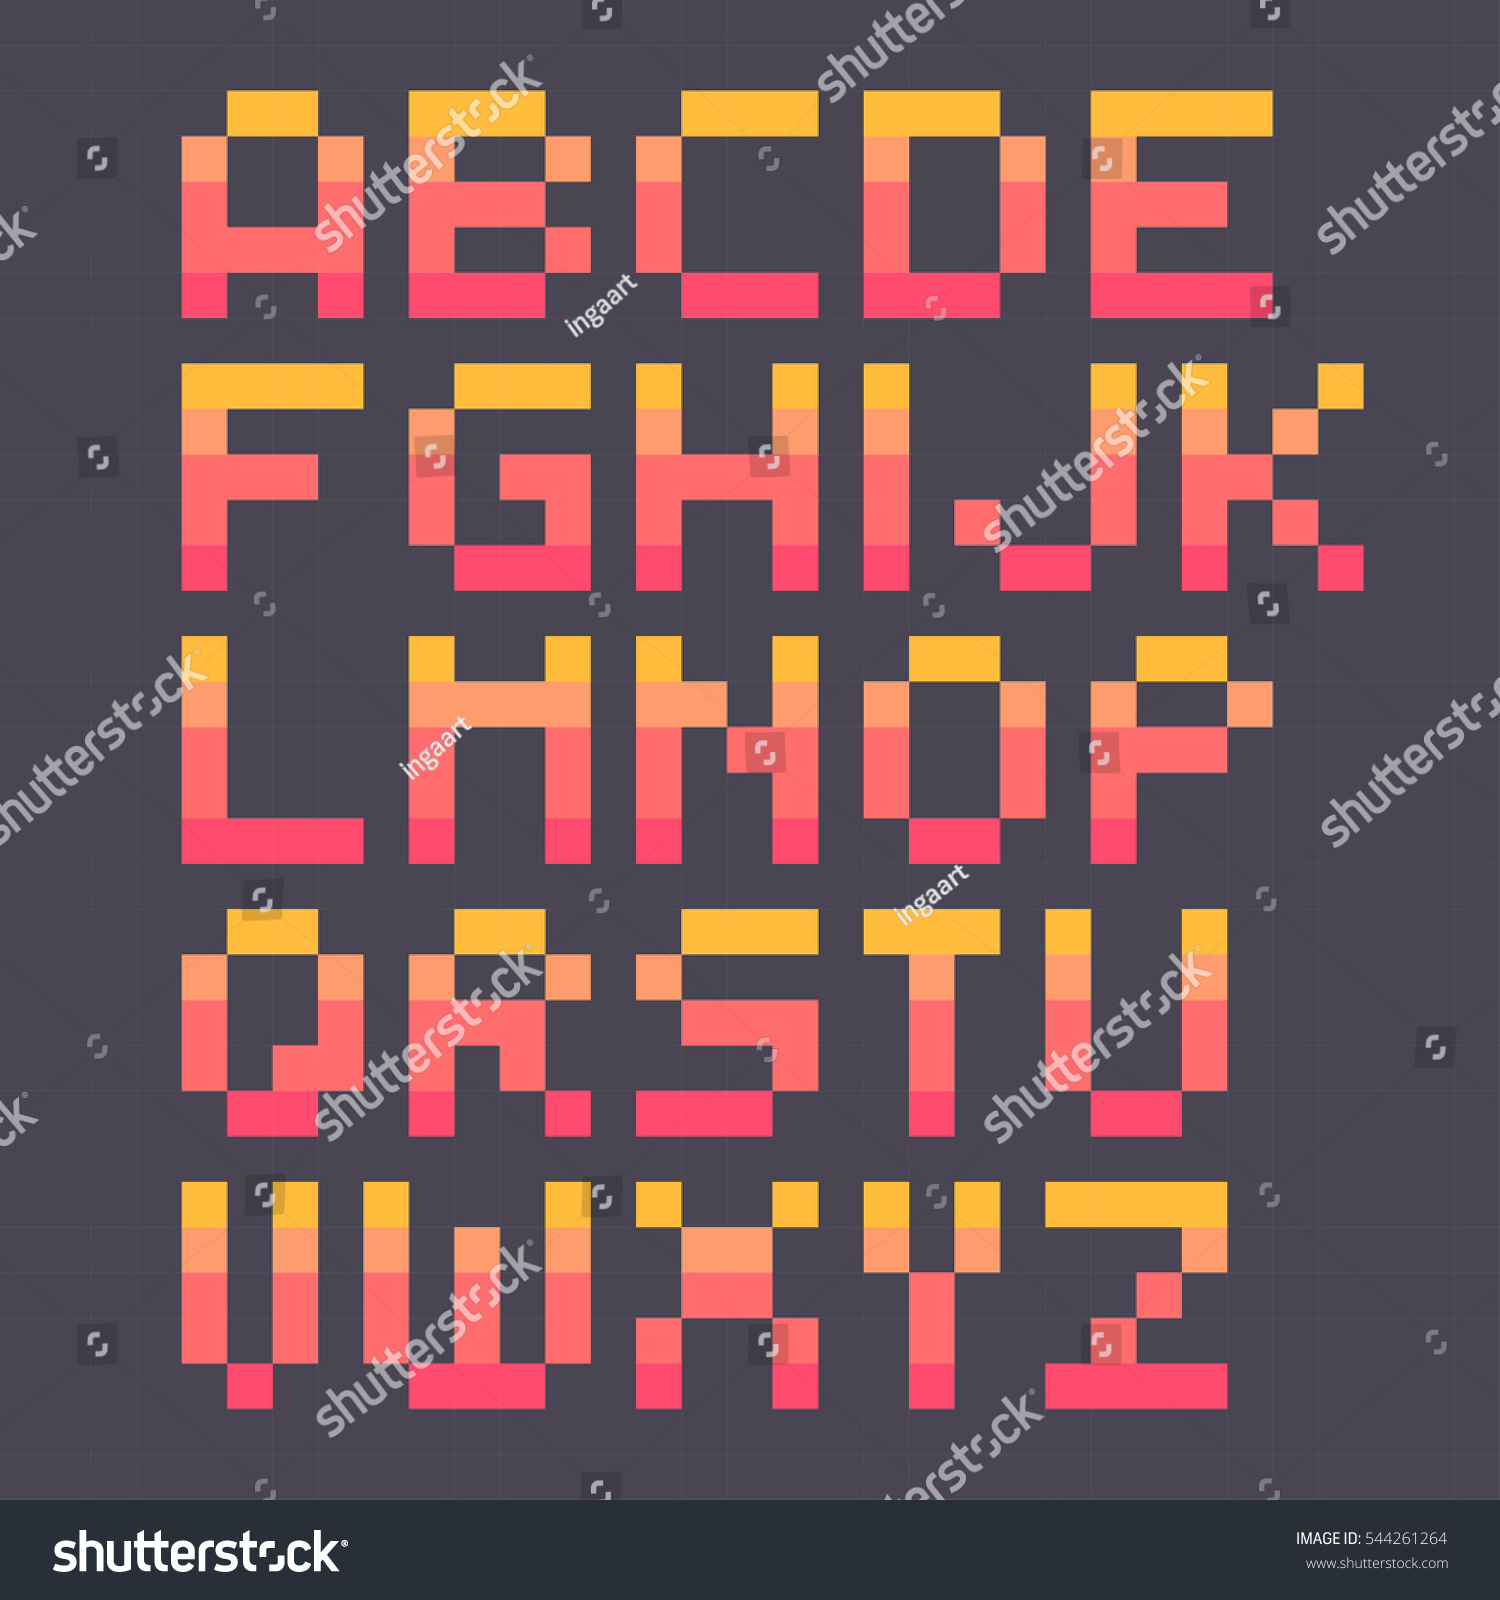 Pixel Art Grid Letters - Pixel Art Grid Gallery